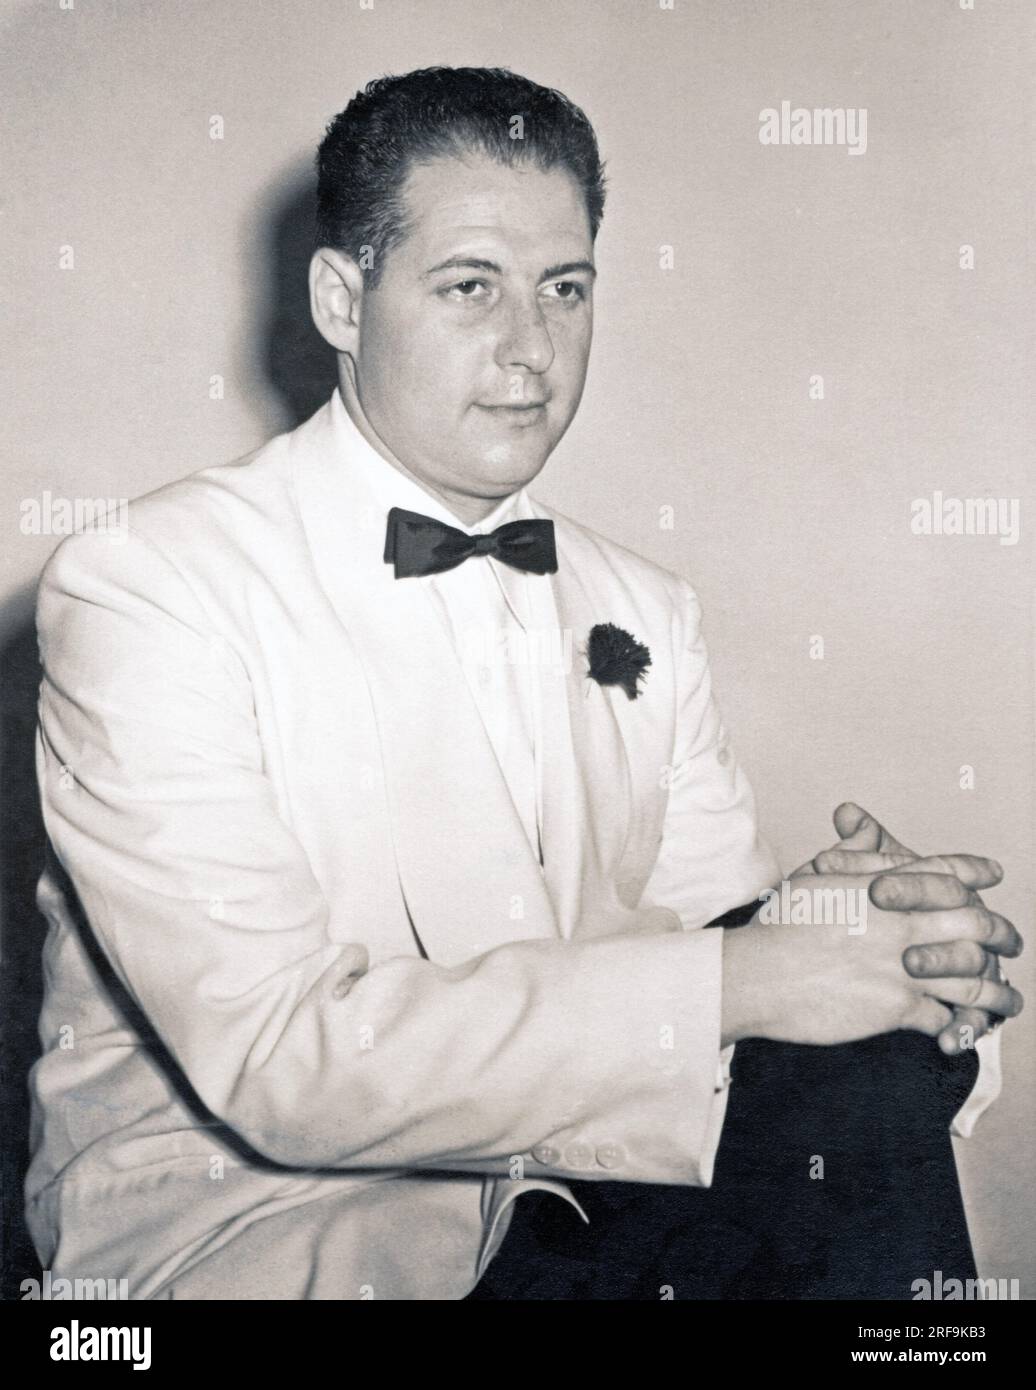 Portrait d'un jeune homme âgé de 20 à 30 ans, vers 1950 ans, portant une veste blanche, une chemise blanche et un noeud papillon noir. Banque D'Images